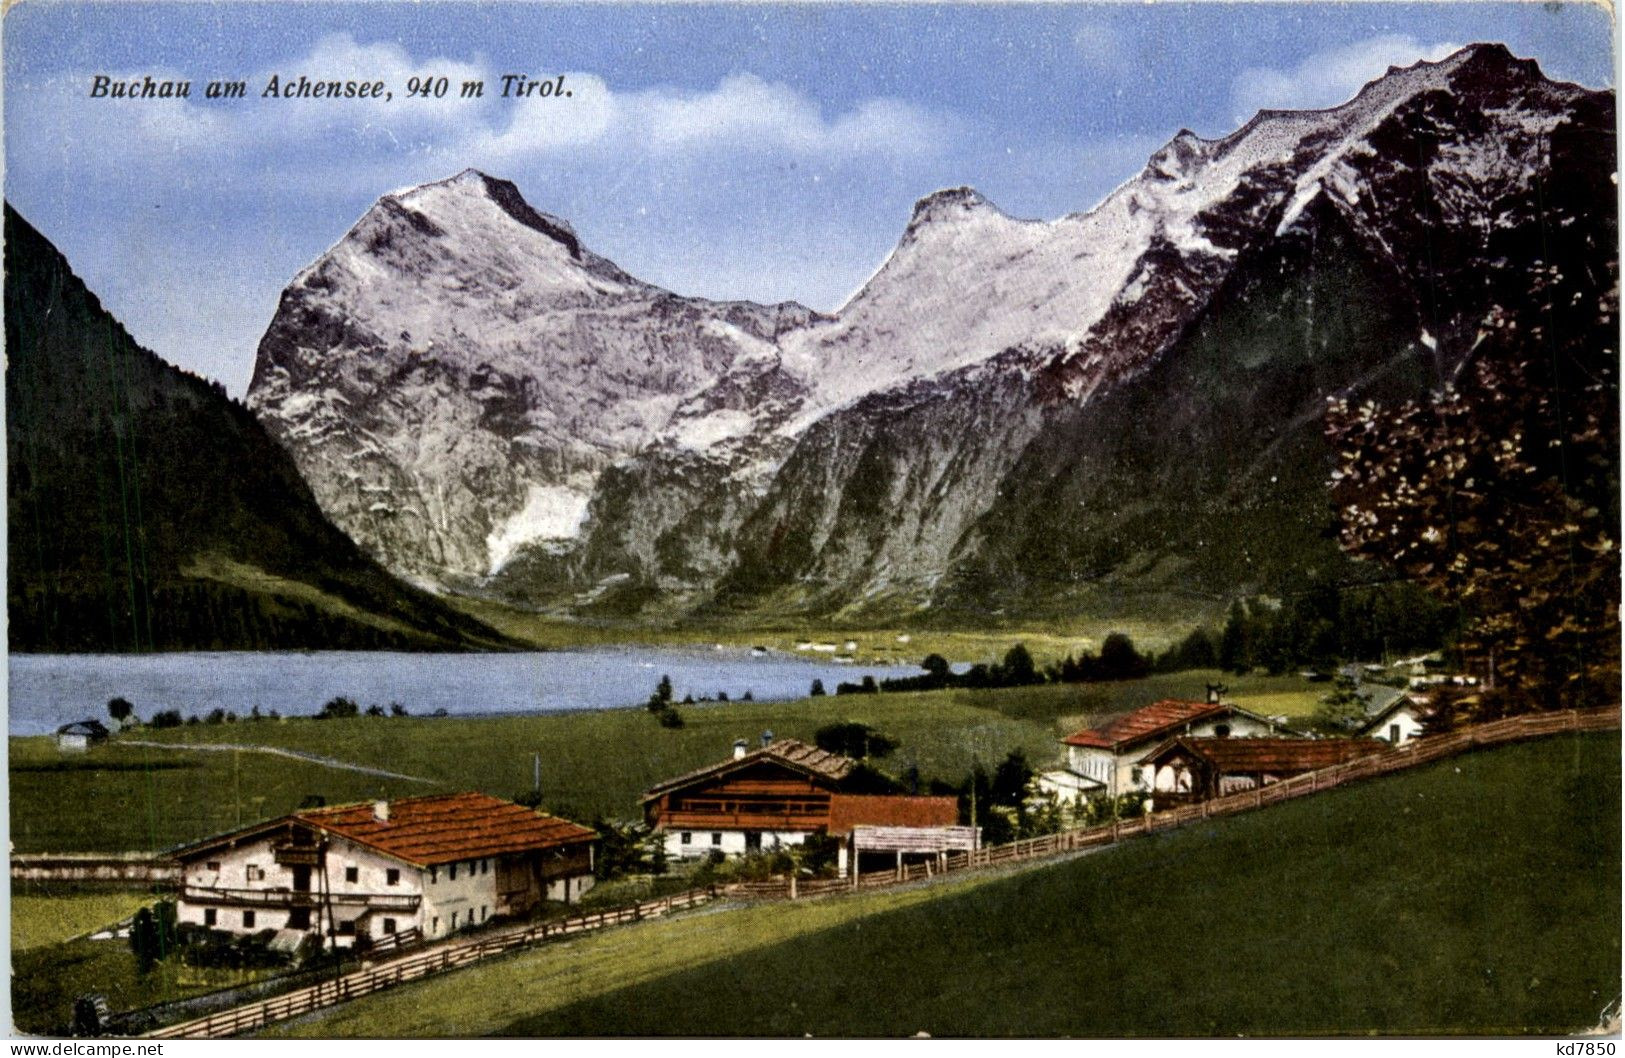 Achensee/Tirol Und Umgebung - Buchau Am Achensee - Achenseeorte